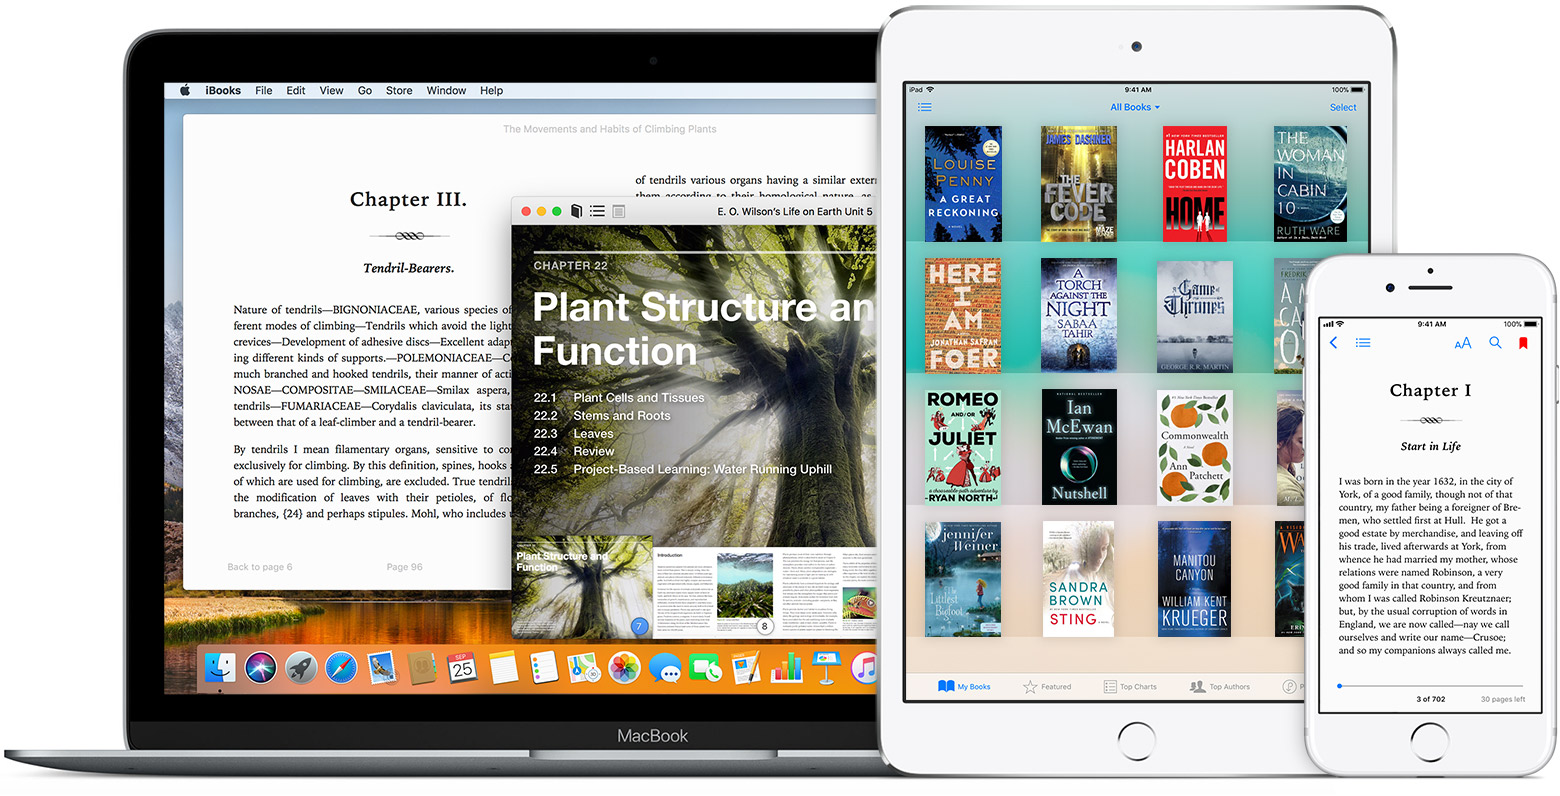 ebook reader app for mac 2017